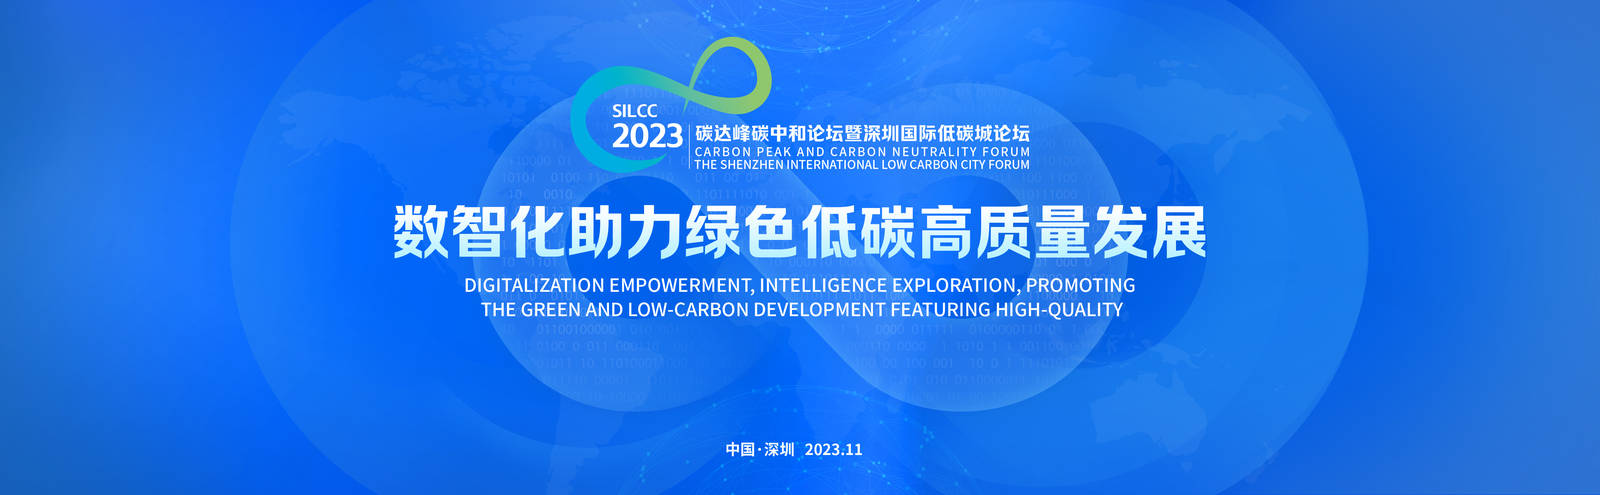 2023碳达峰碳中和论坛暨深圳国际低碳城论坛宣传KV主画面-第2张